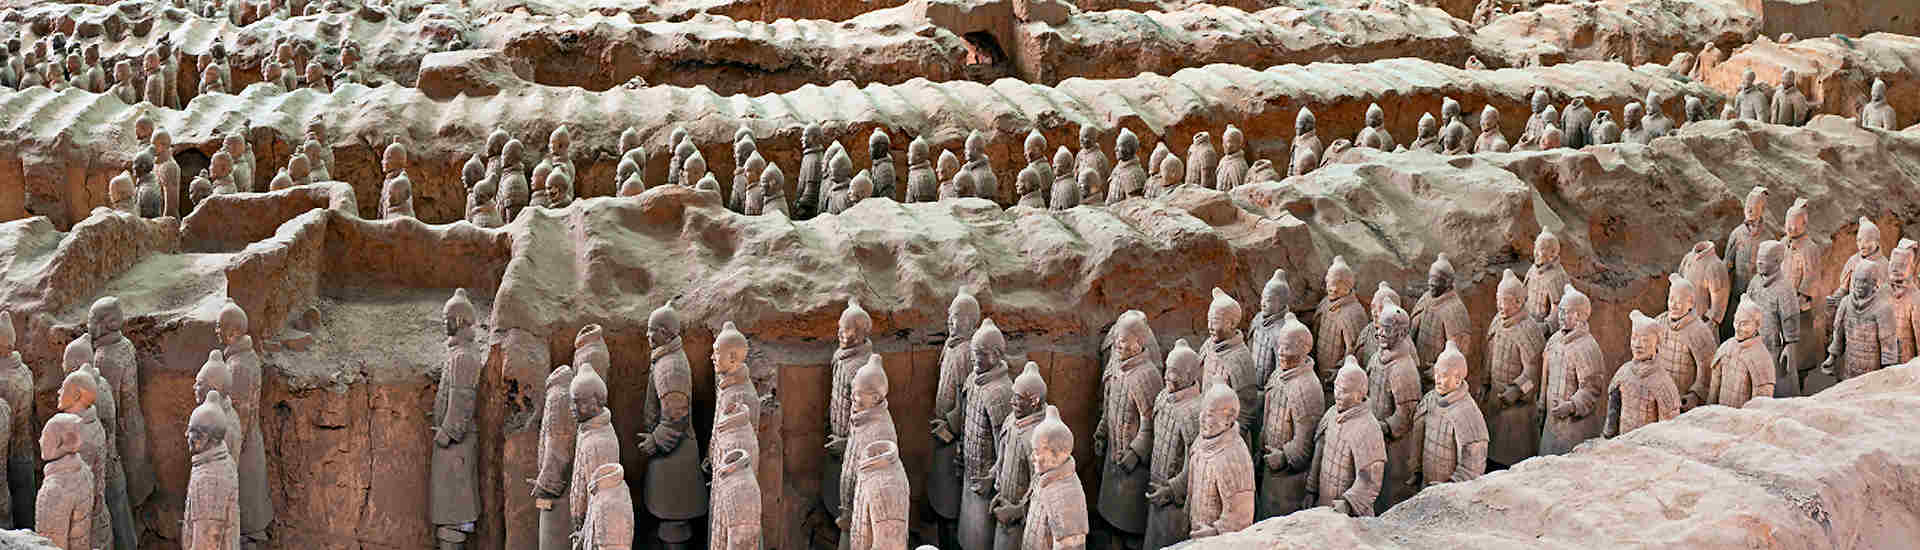 Bild einer beeindruckenden Terrakotta Armee in China, ein Höhepunkt jeder Reise in dieses faszinierende Land